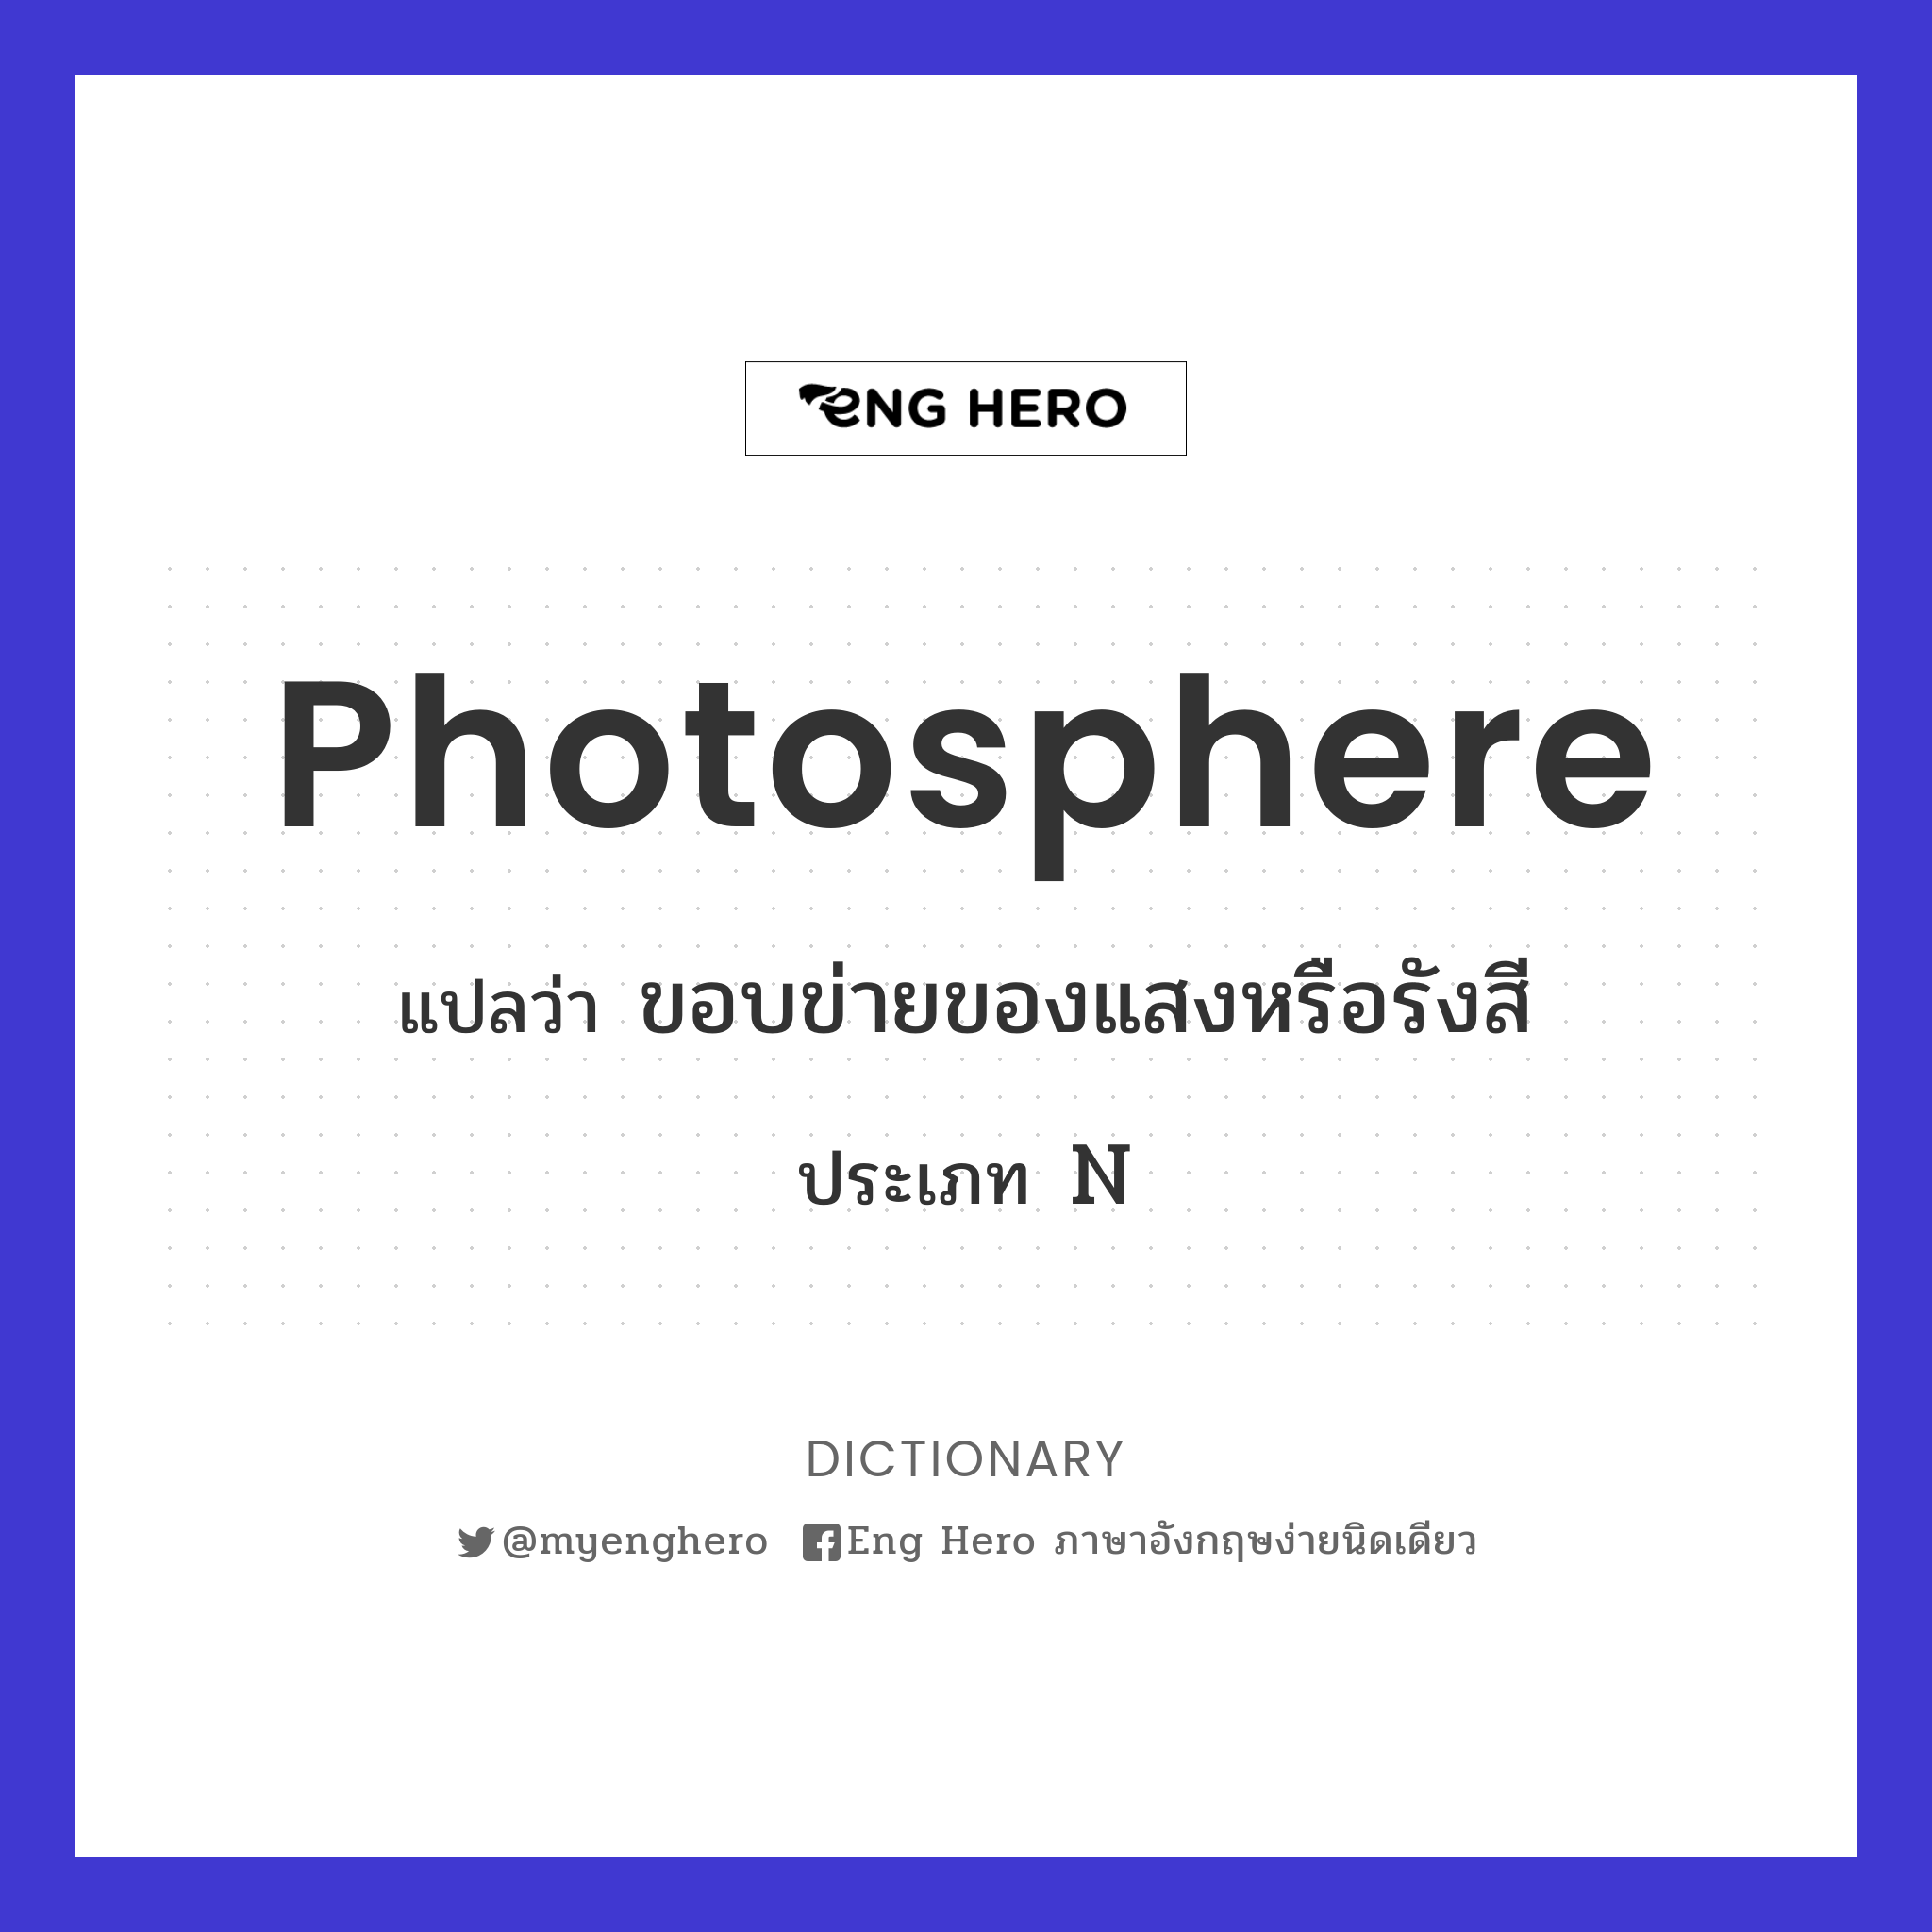 photosphere